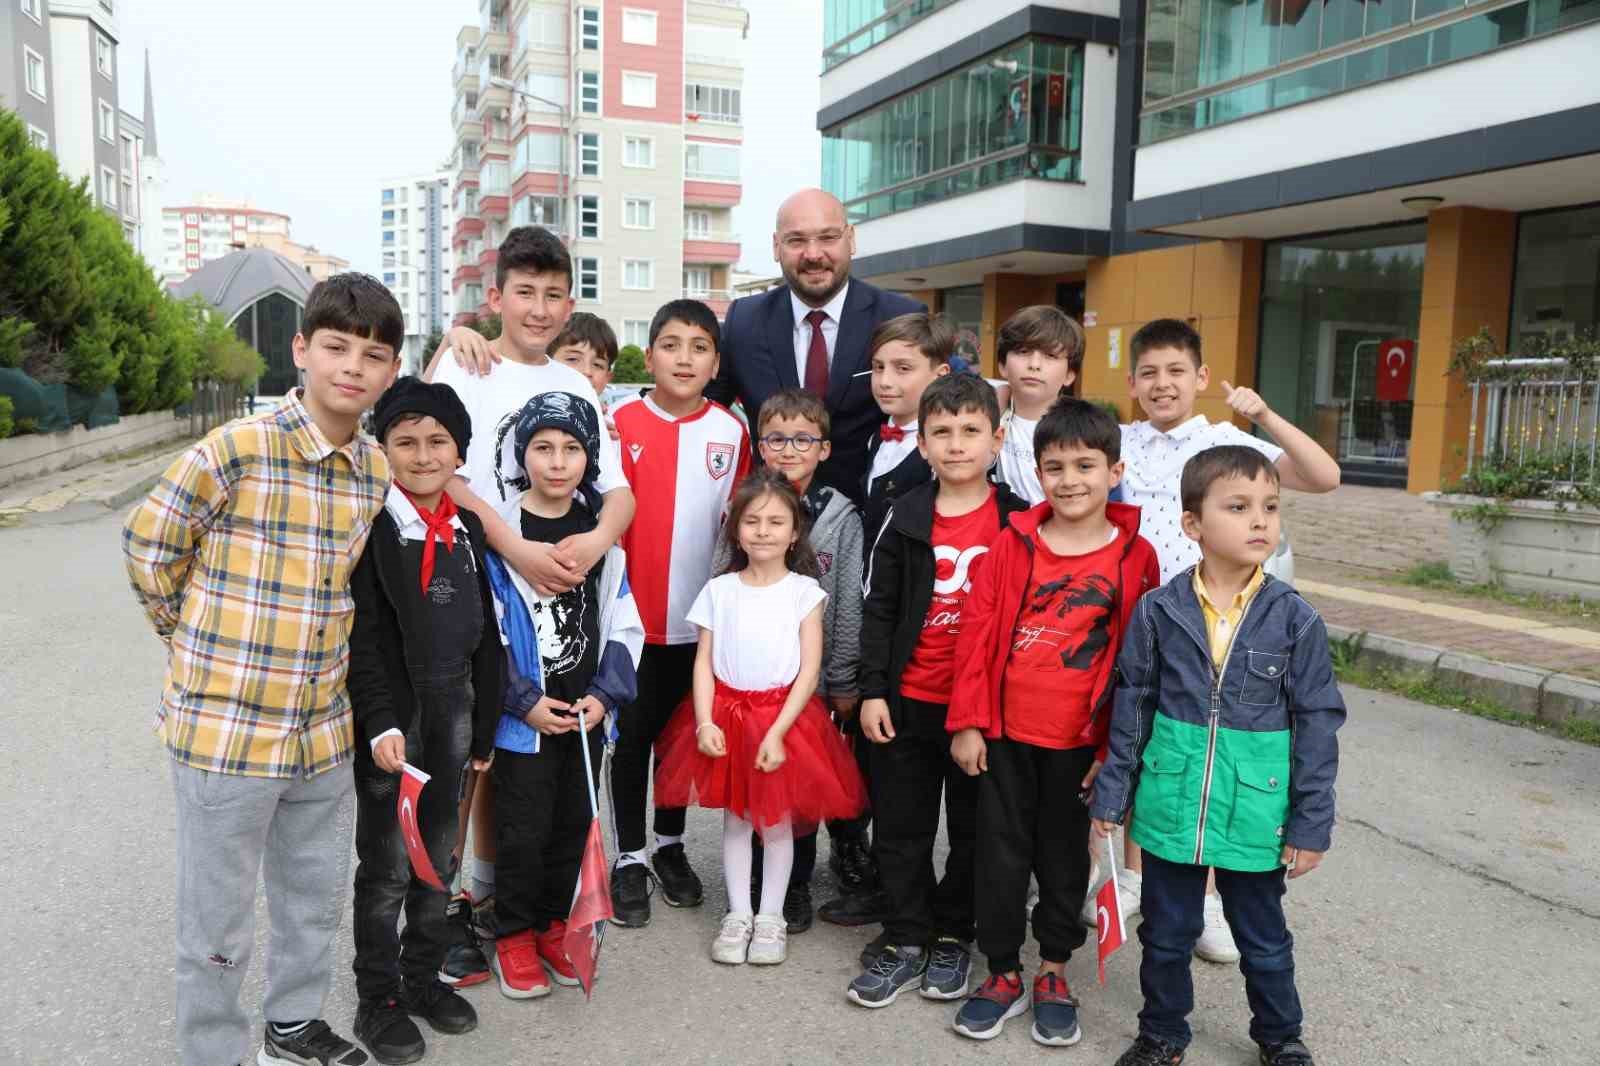 Başkan Türkel: “Gençlerin projelerini el birliğiyle hayata geçireceğiz”
